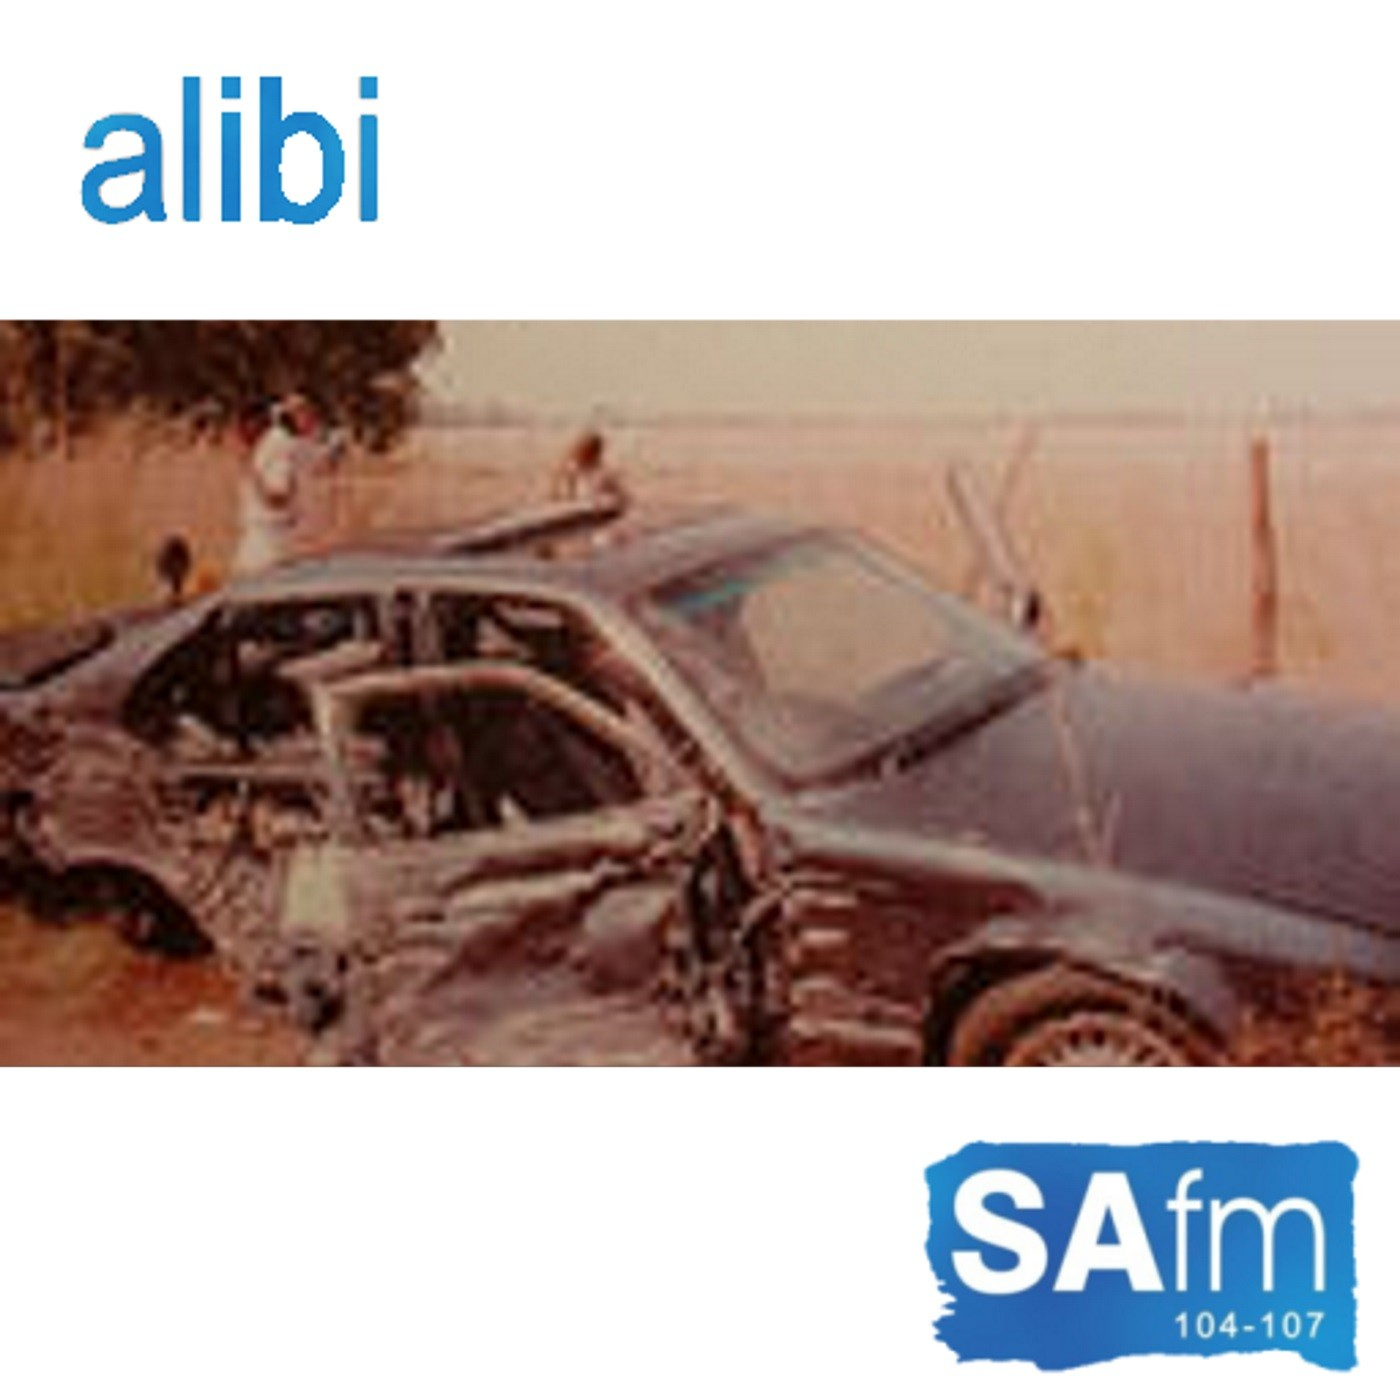 Alibi radio series - Episode 3